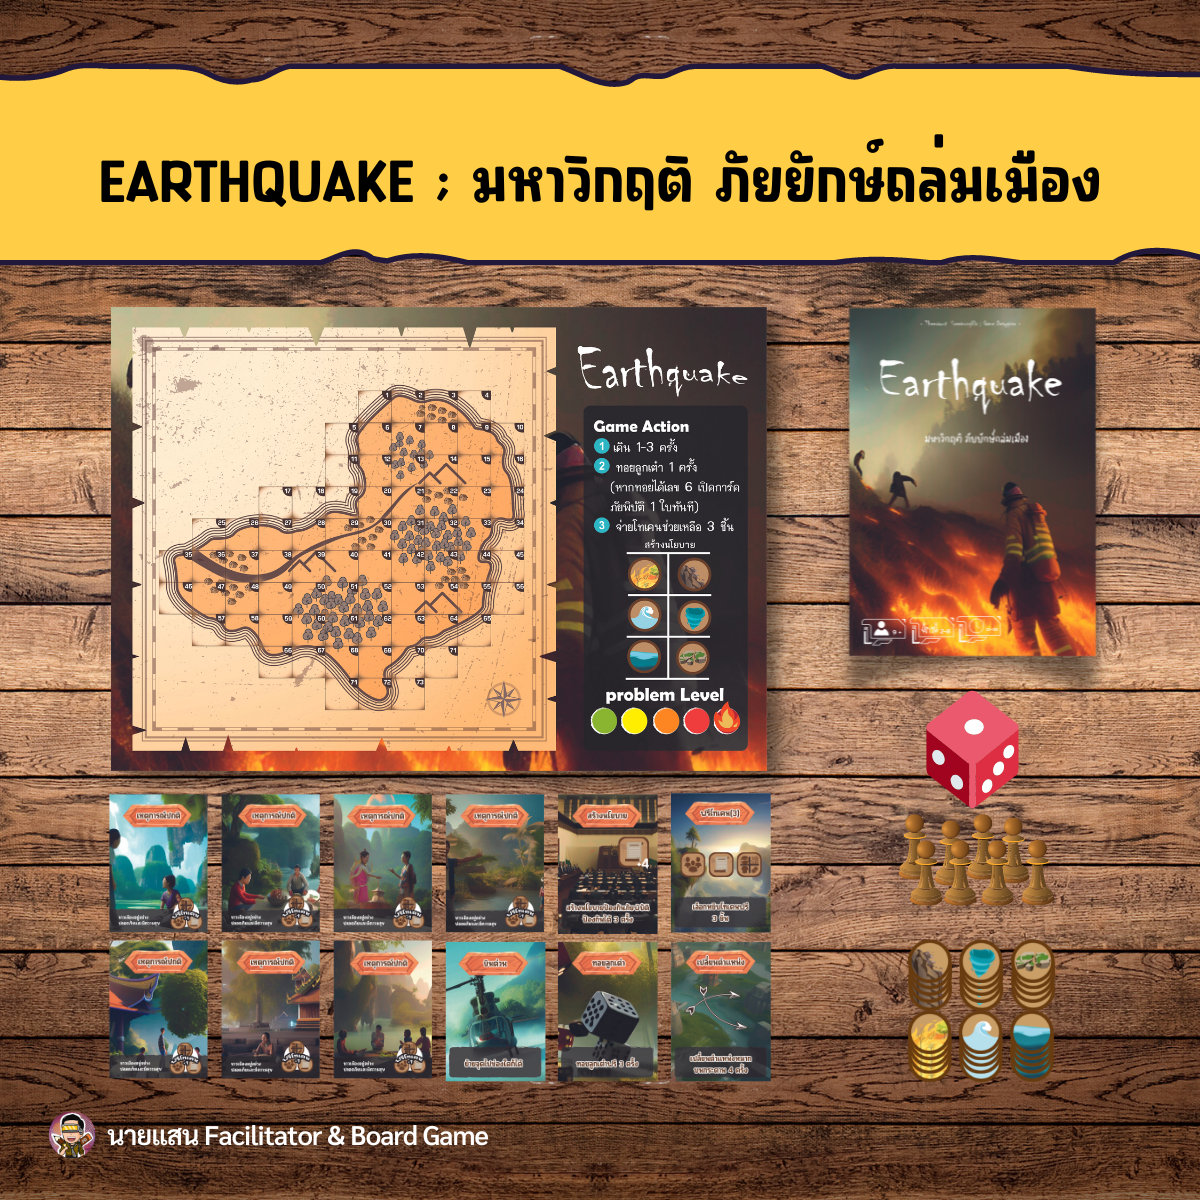 ภาพประกอบไอเดีย บอร์ดเกม : Earthquake มหาวิกฤติ ภัยยักษ์ถล่มเมือง